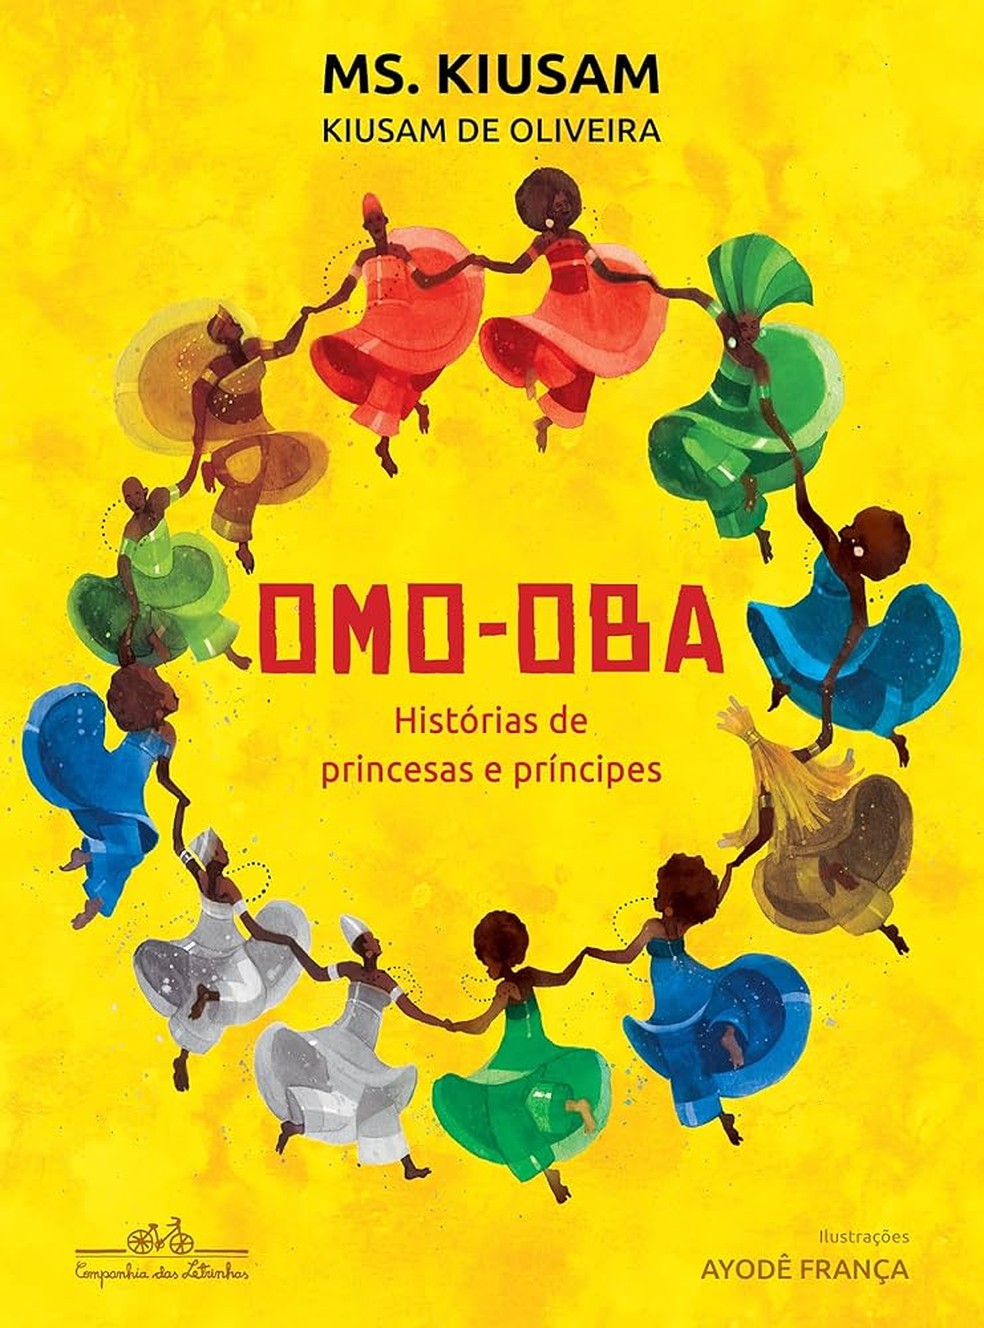 Livro infantil "Omo-Oba: Histórias de princesas e princípes", de Kiusam de Oliveira e Ayodê França — Foto: Divulgação